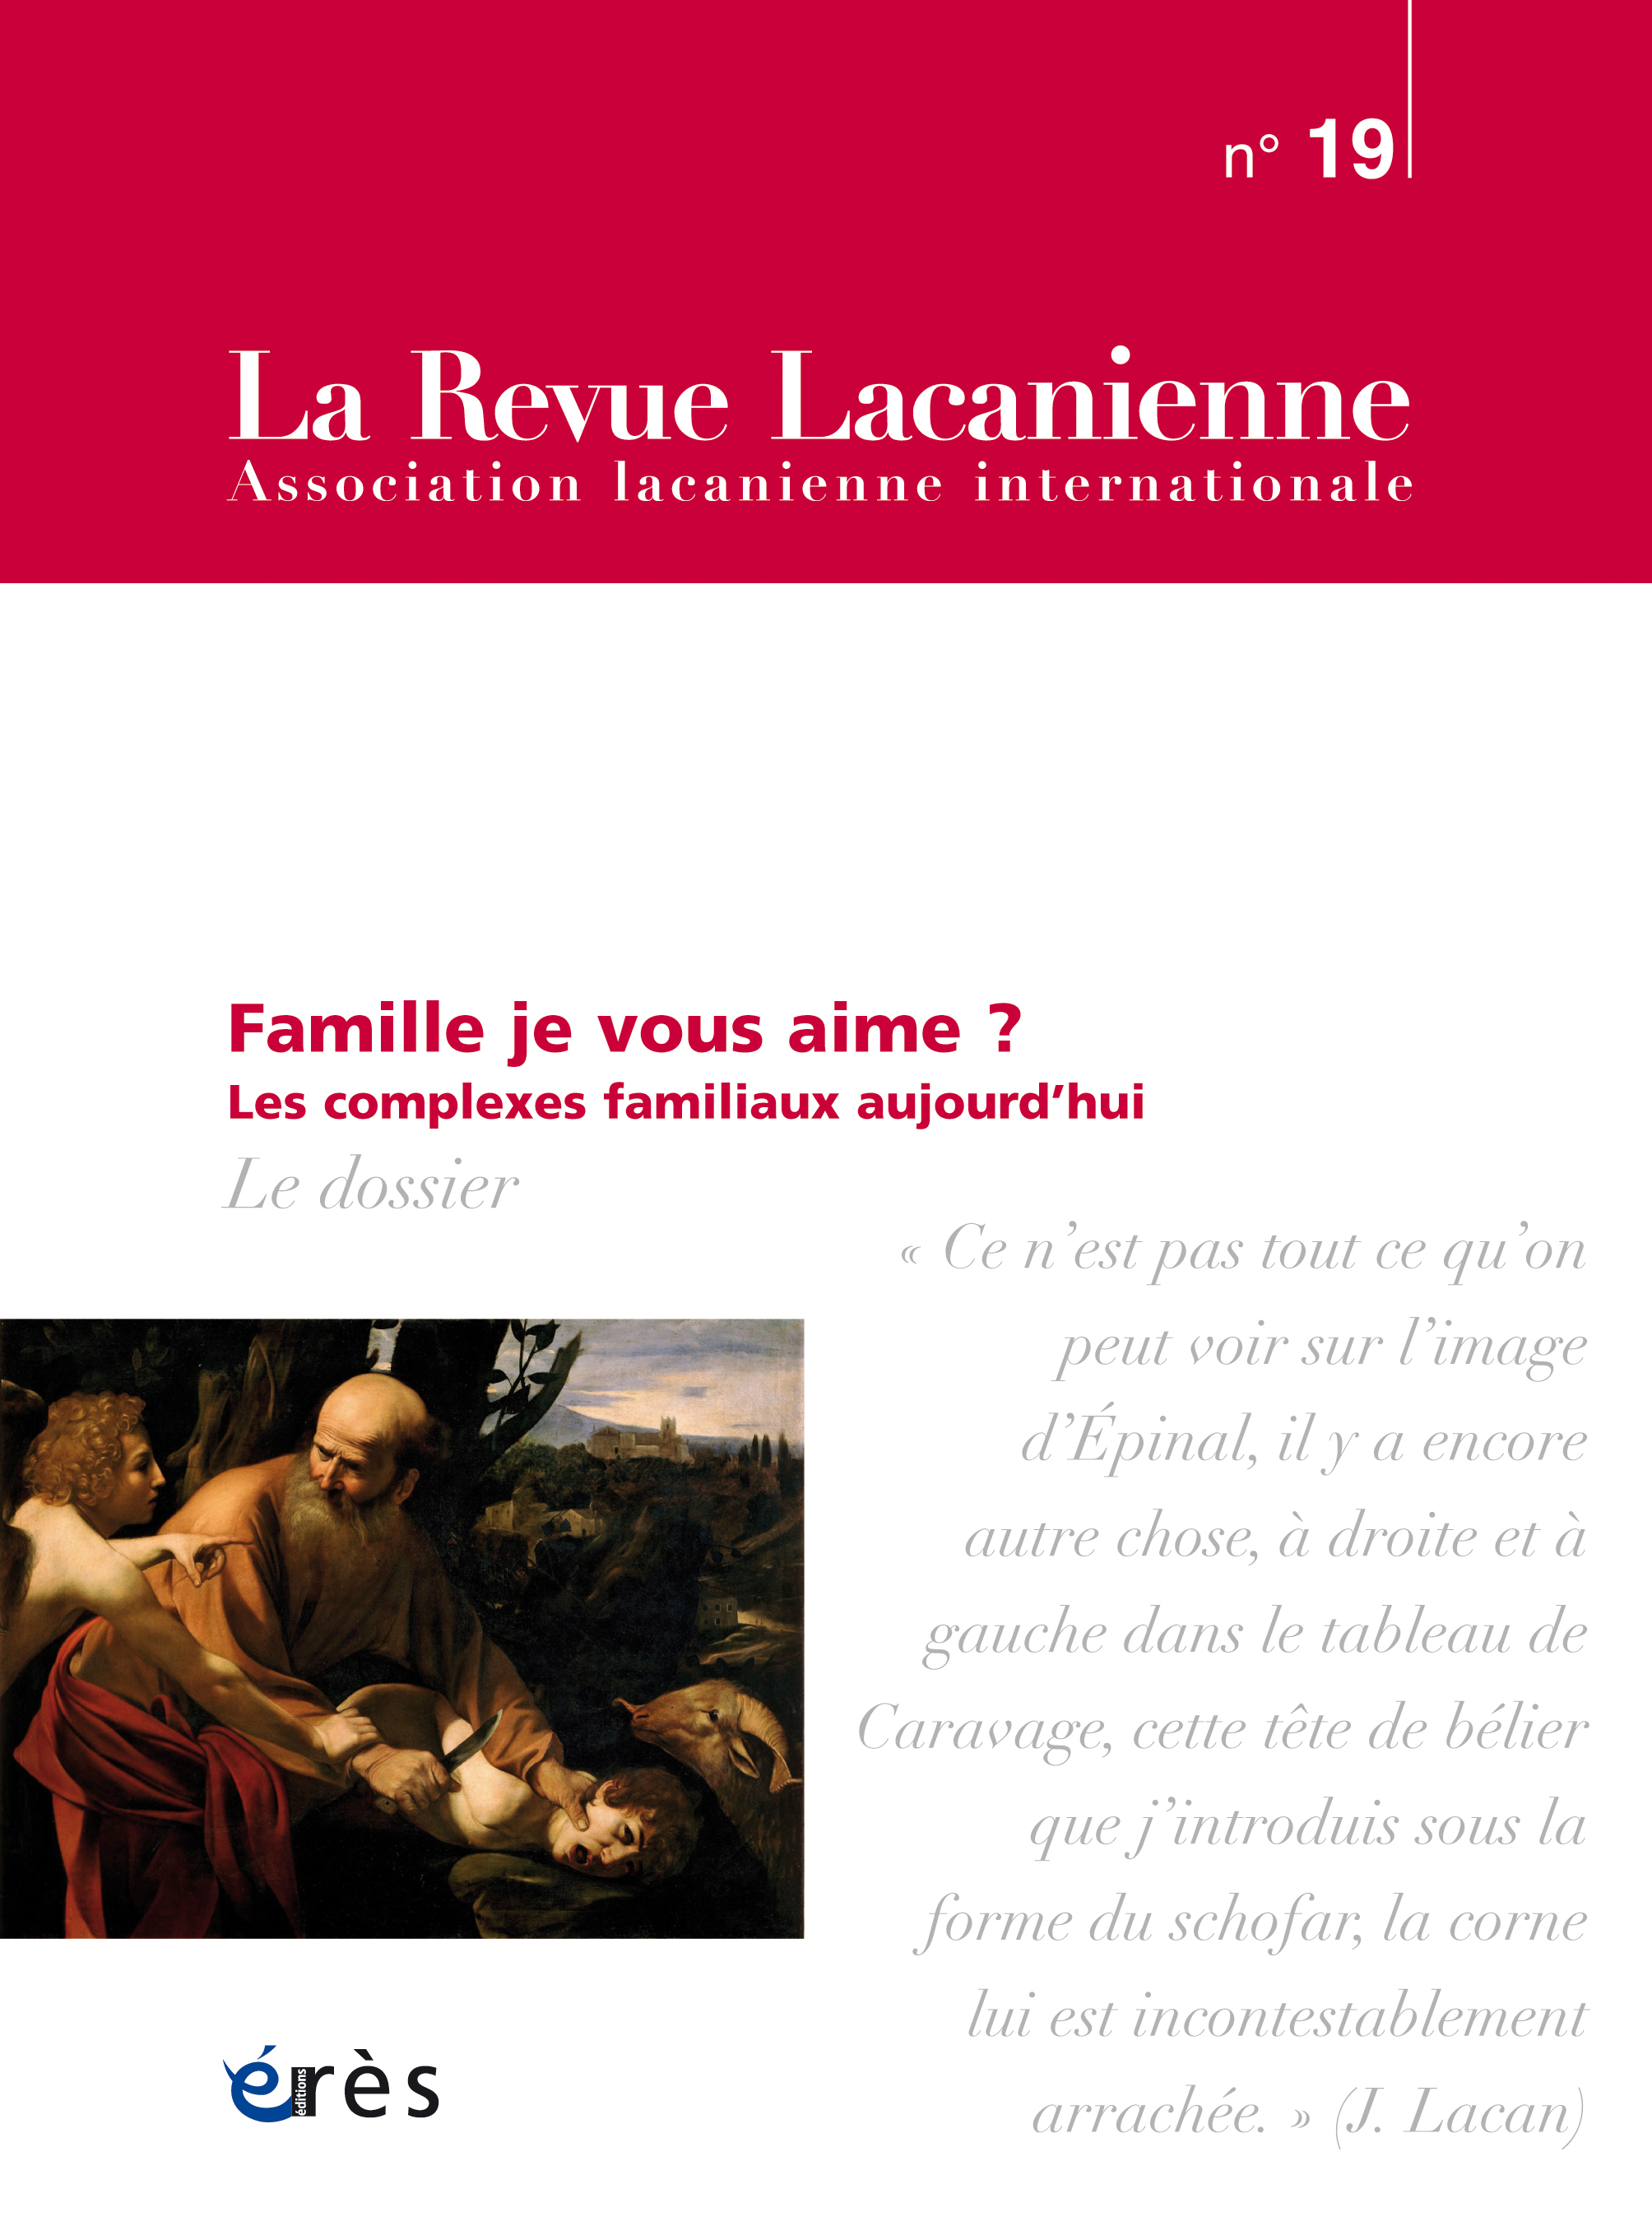 Couverture de la Revue Lacanienne "Famille, je vous aime ?"